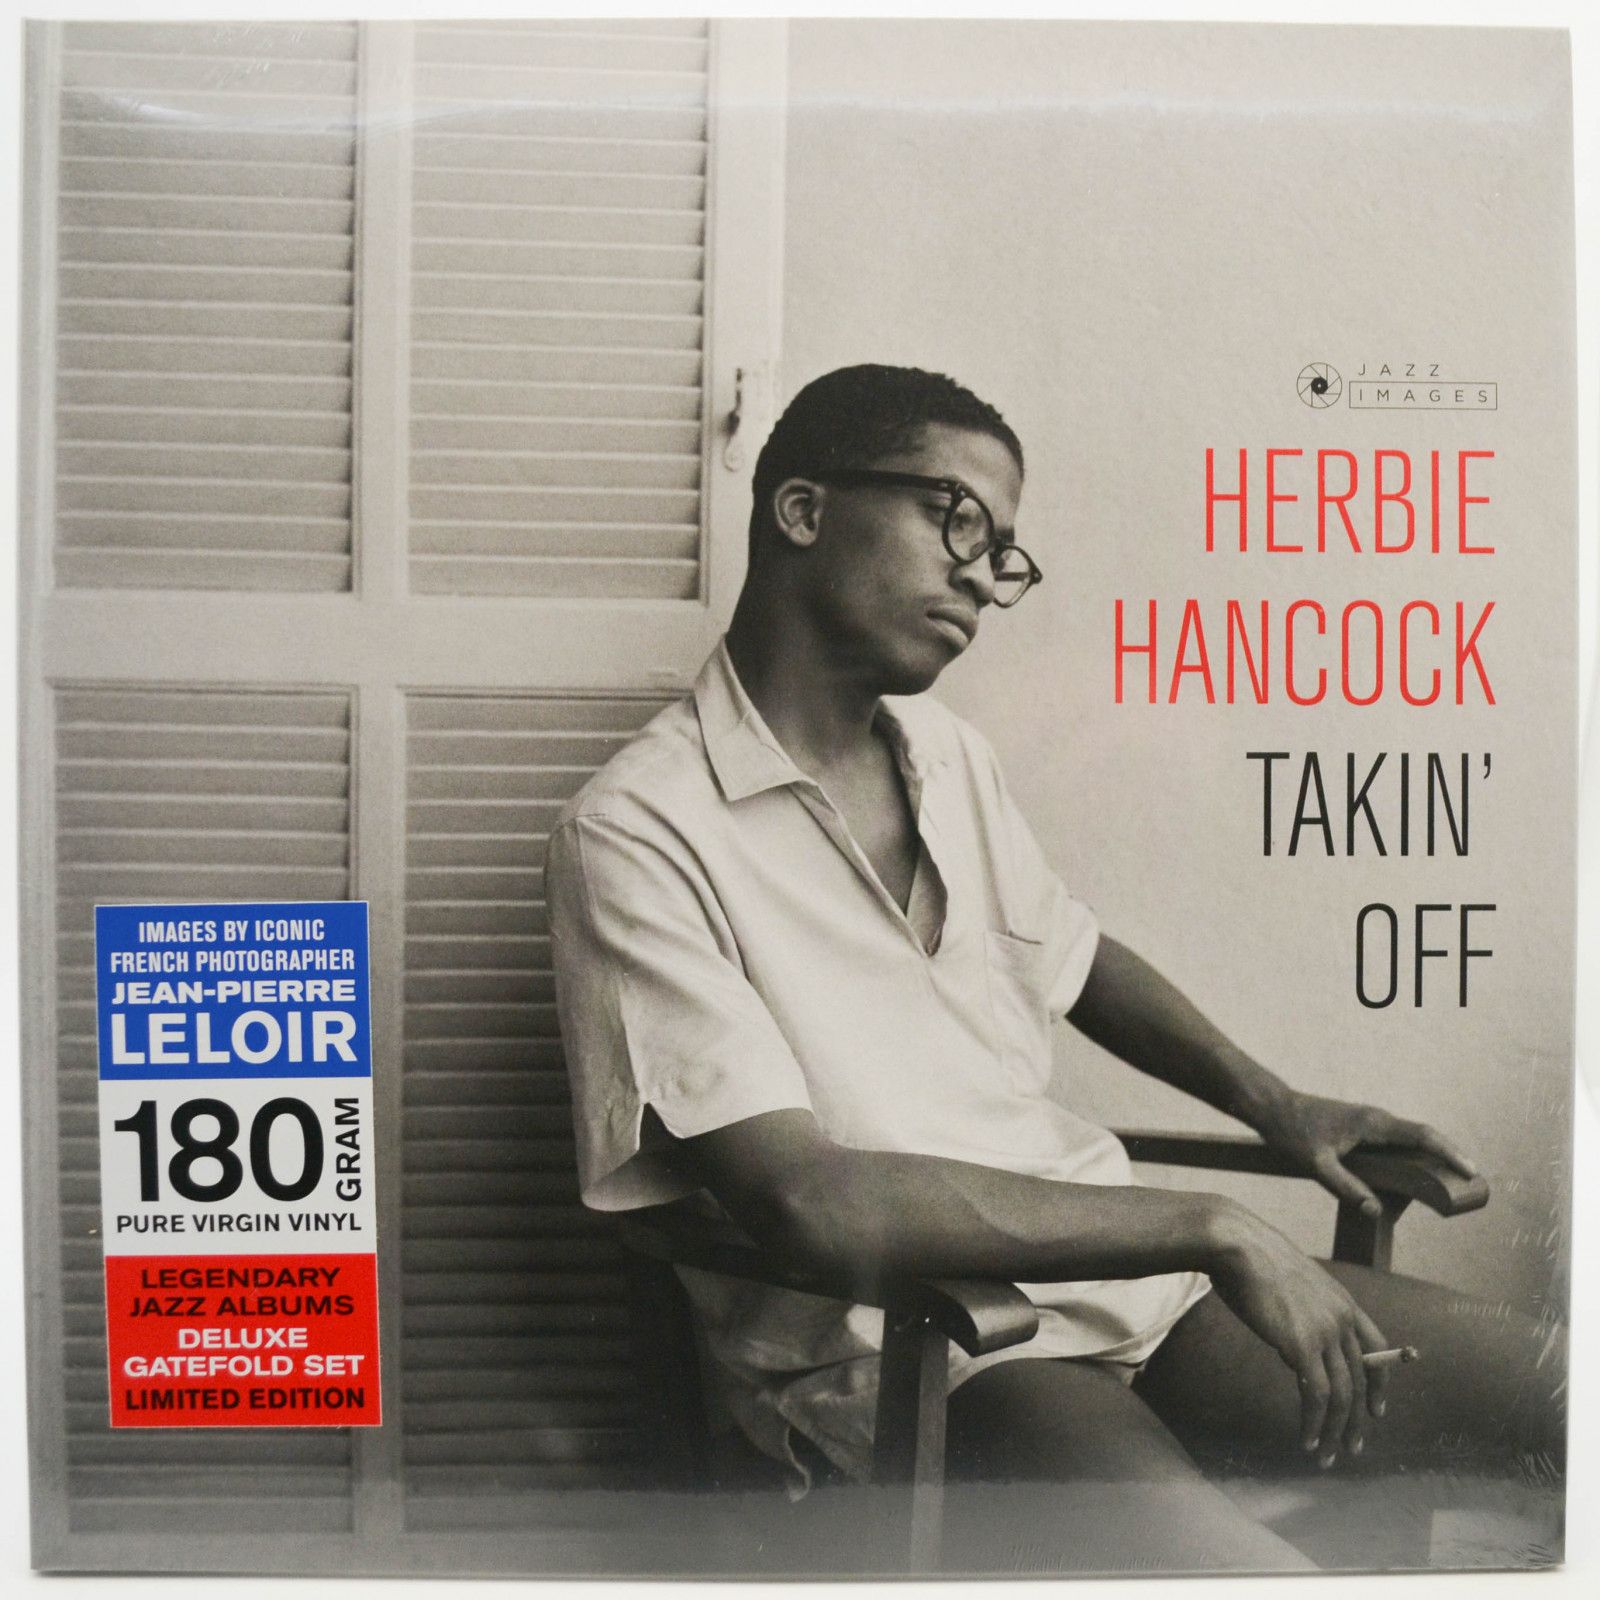 Herbie Hancock — Takin' Off, 1962